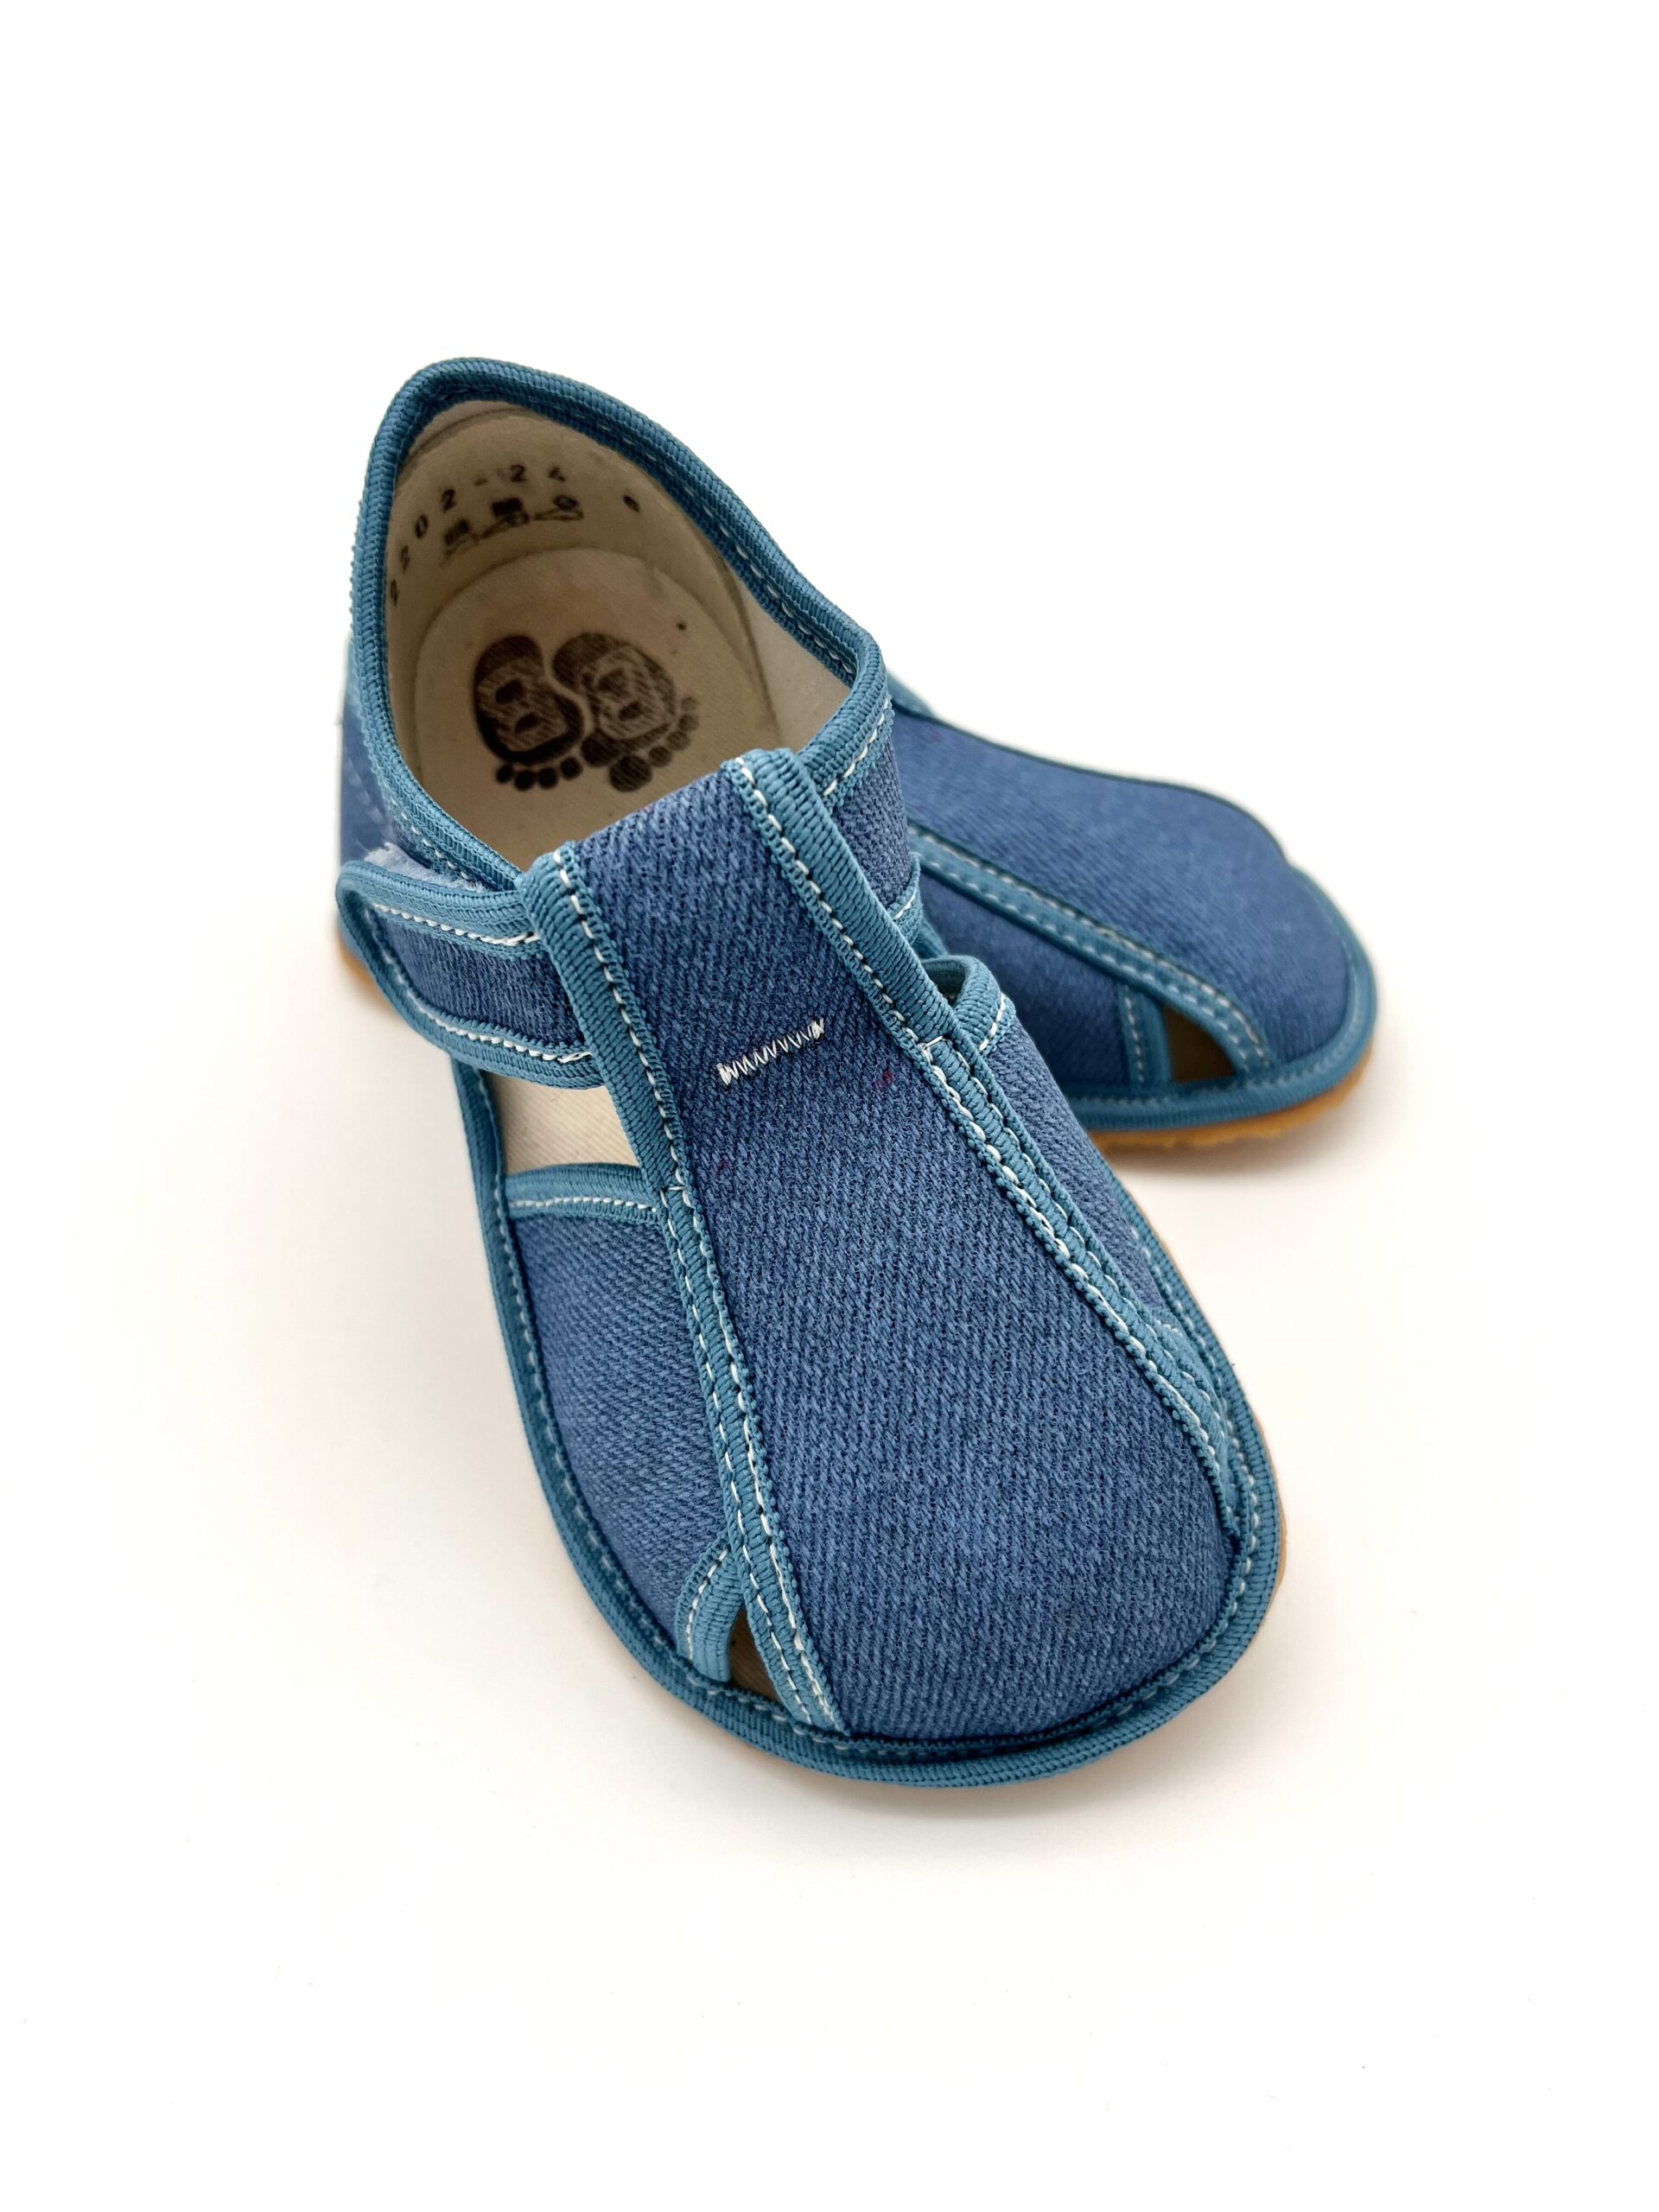 Baby Bare sisejalatsid Denim Laste barefoot jalatsid - HellyK - Kvaliteetsed lasteriided, villariided, barefoot jalatsid